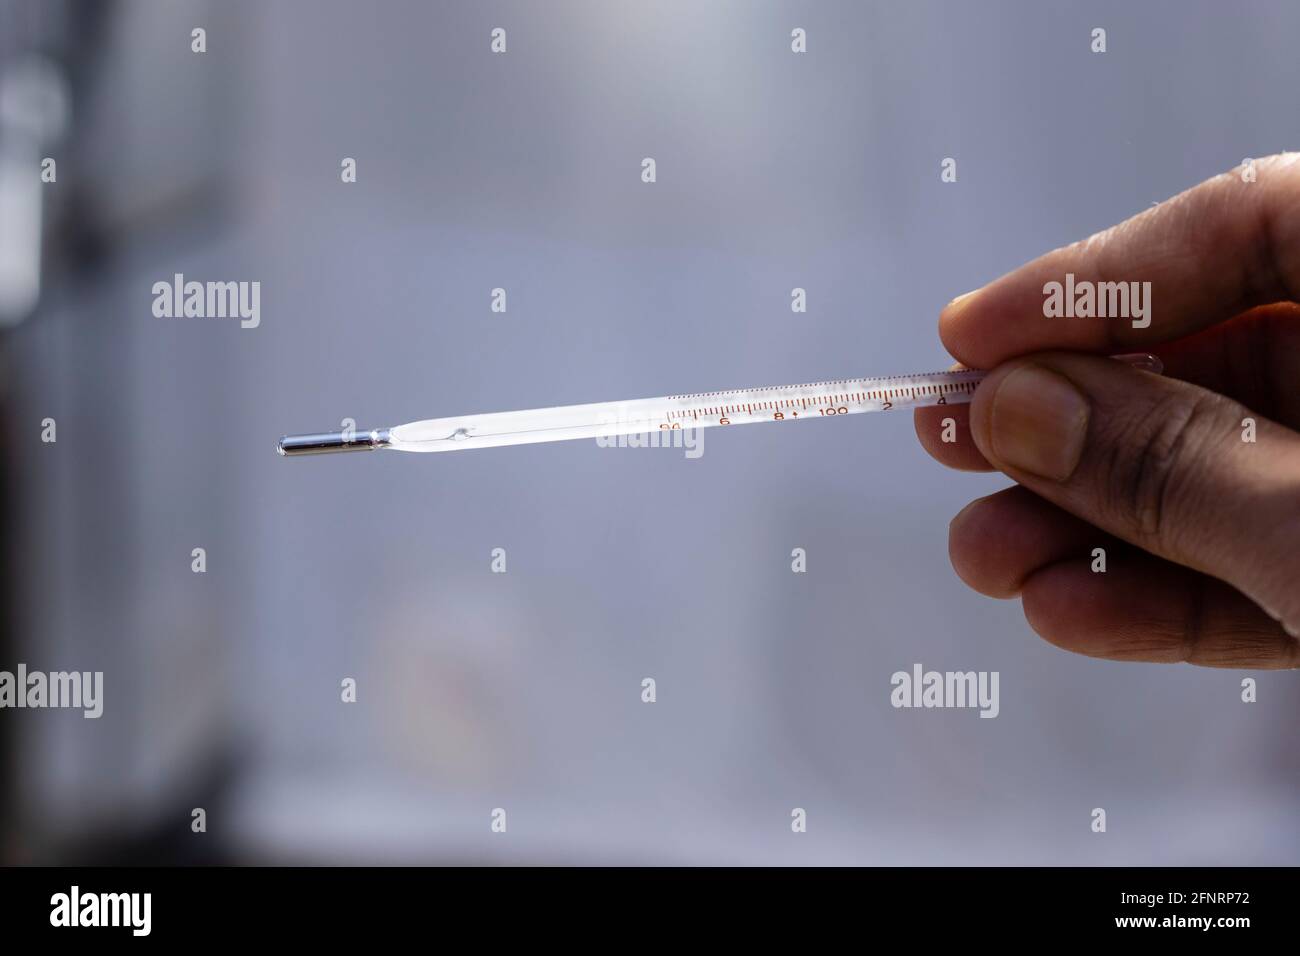 Selektiver Fokus auf ein analoges Thermometer, das in menschlicher Hand gehalten wird Stockfoto